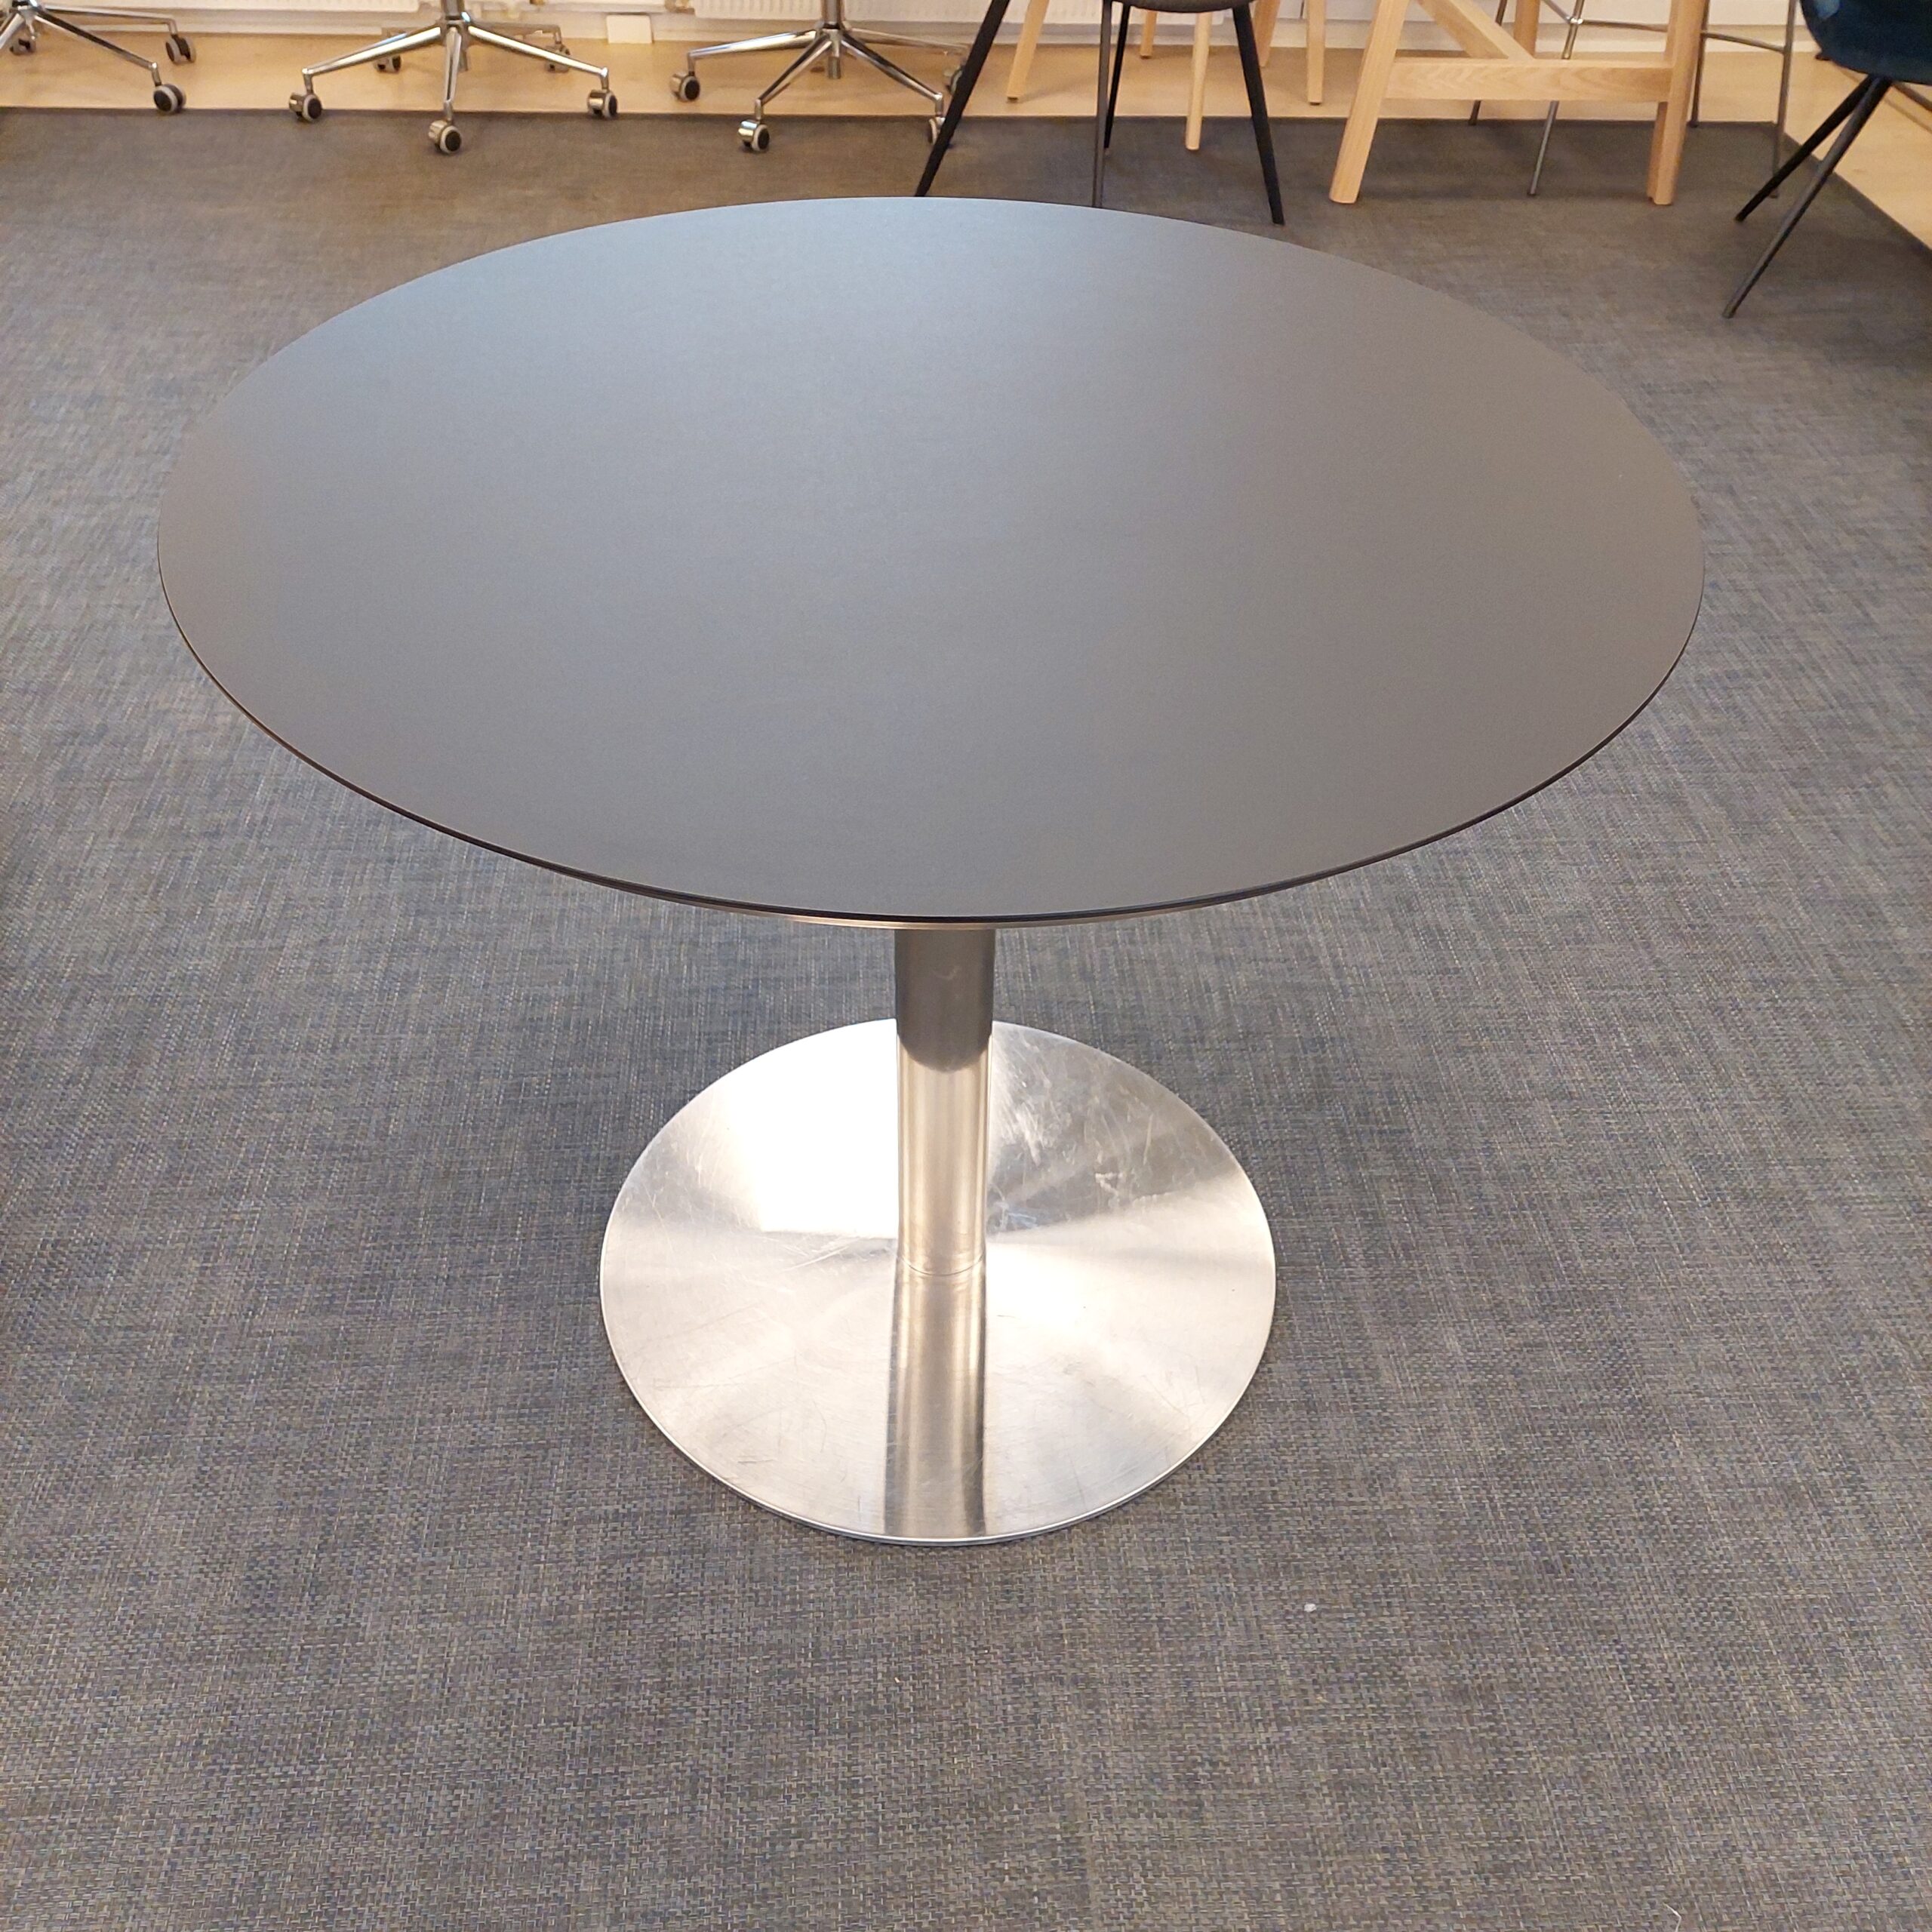 Mødebord - Ø90 cm - Ny Sort linoleum plade - Brugt Børstet stål ben